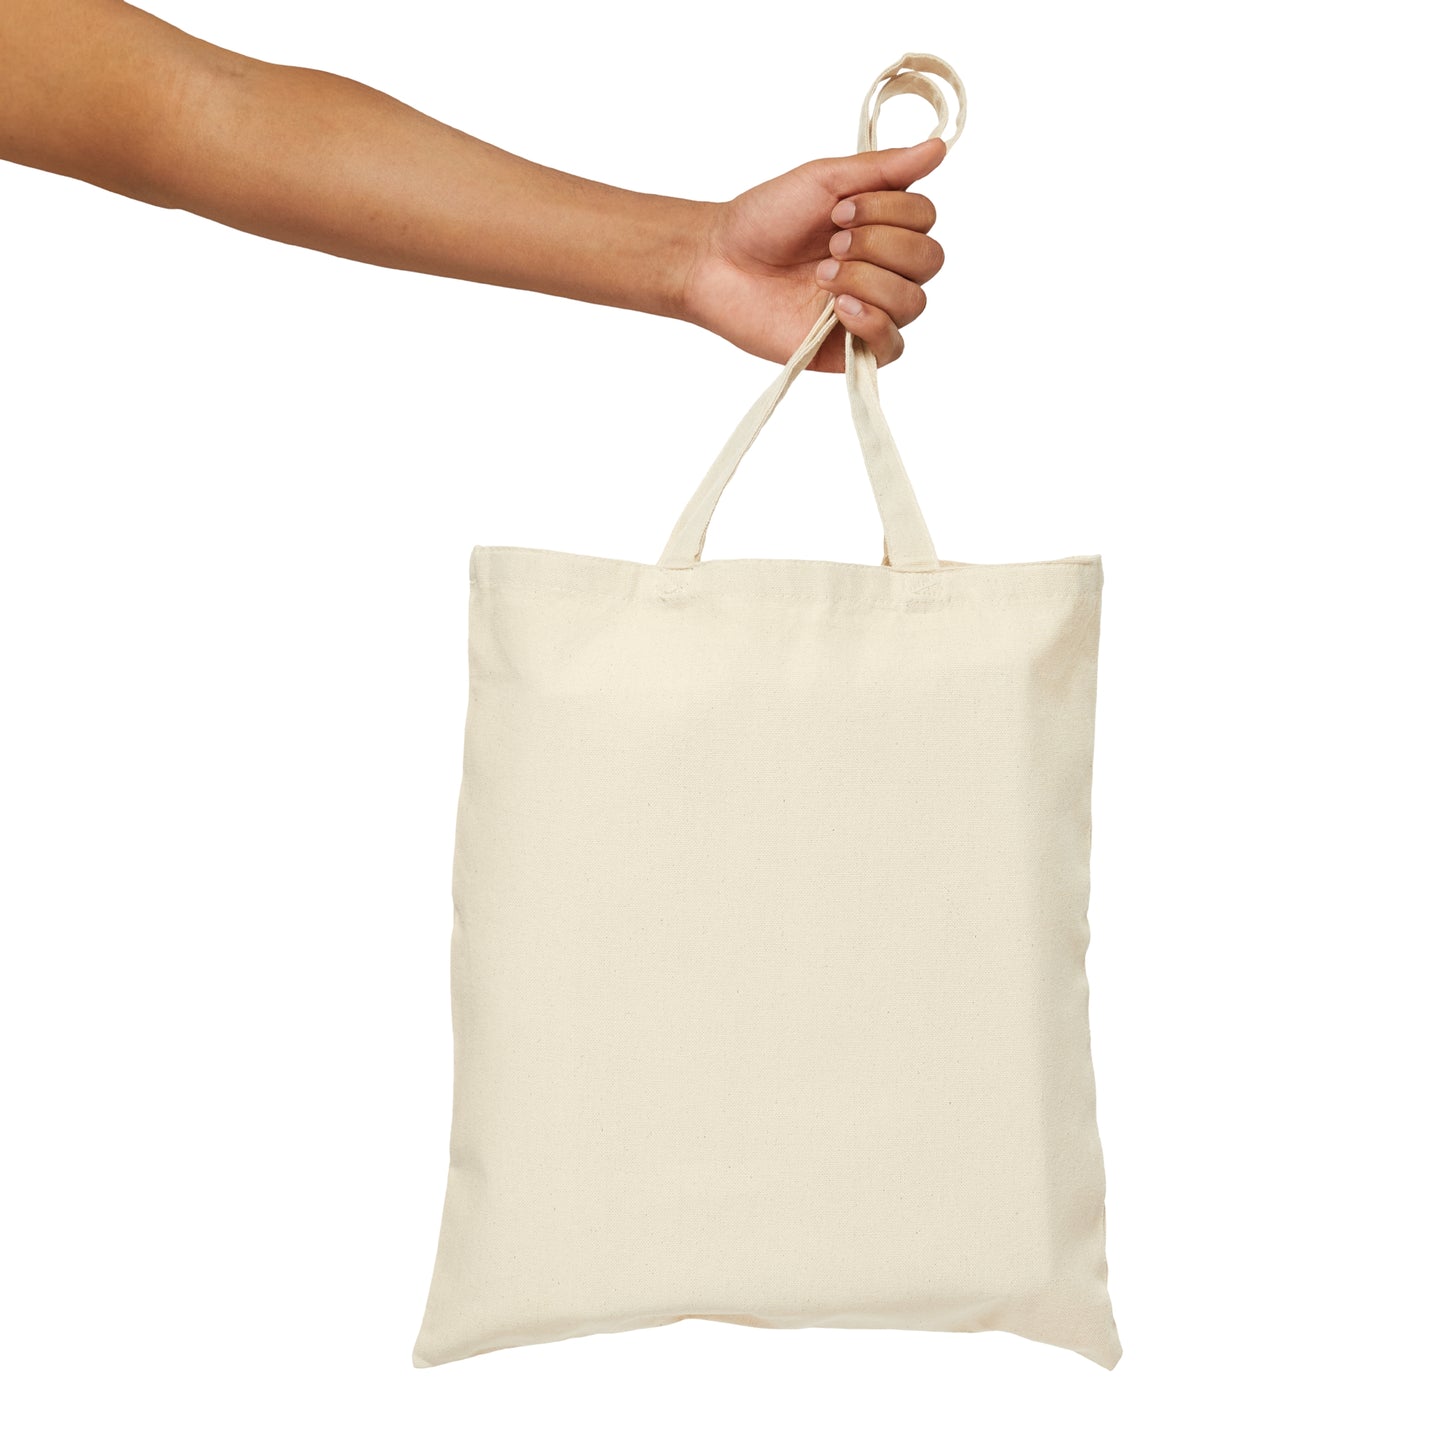 Teacher's Gift / Teacher Tote Bag